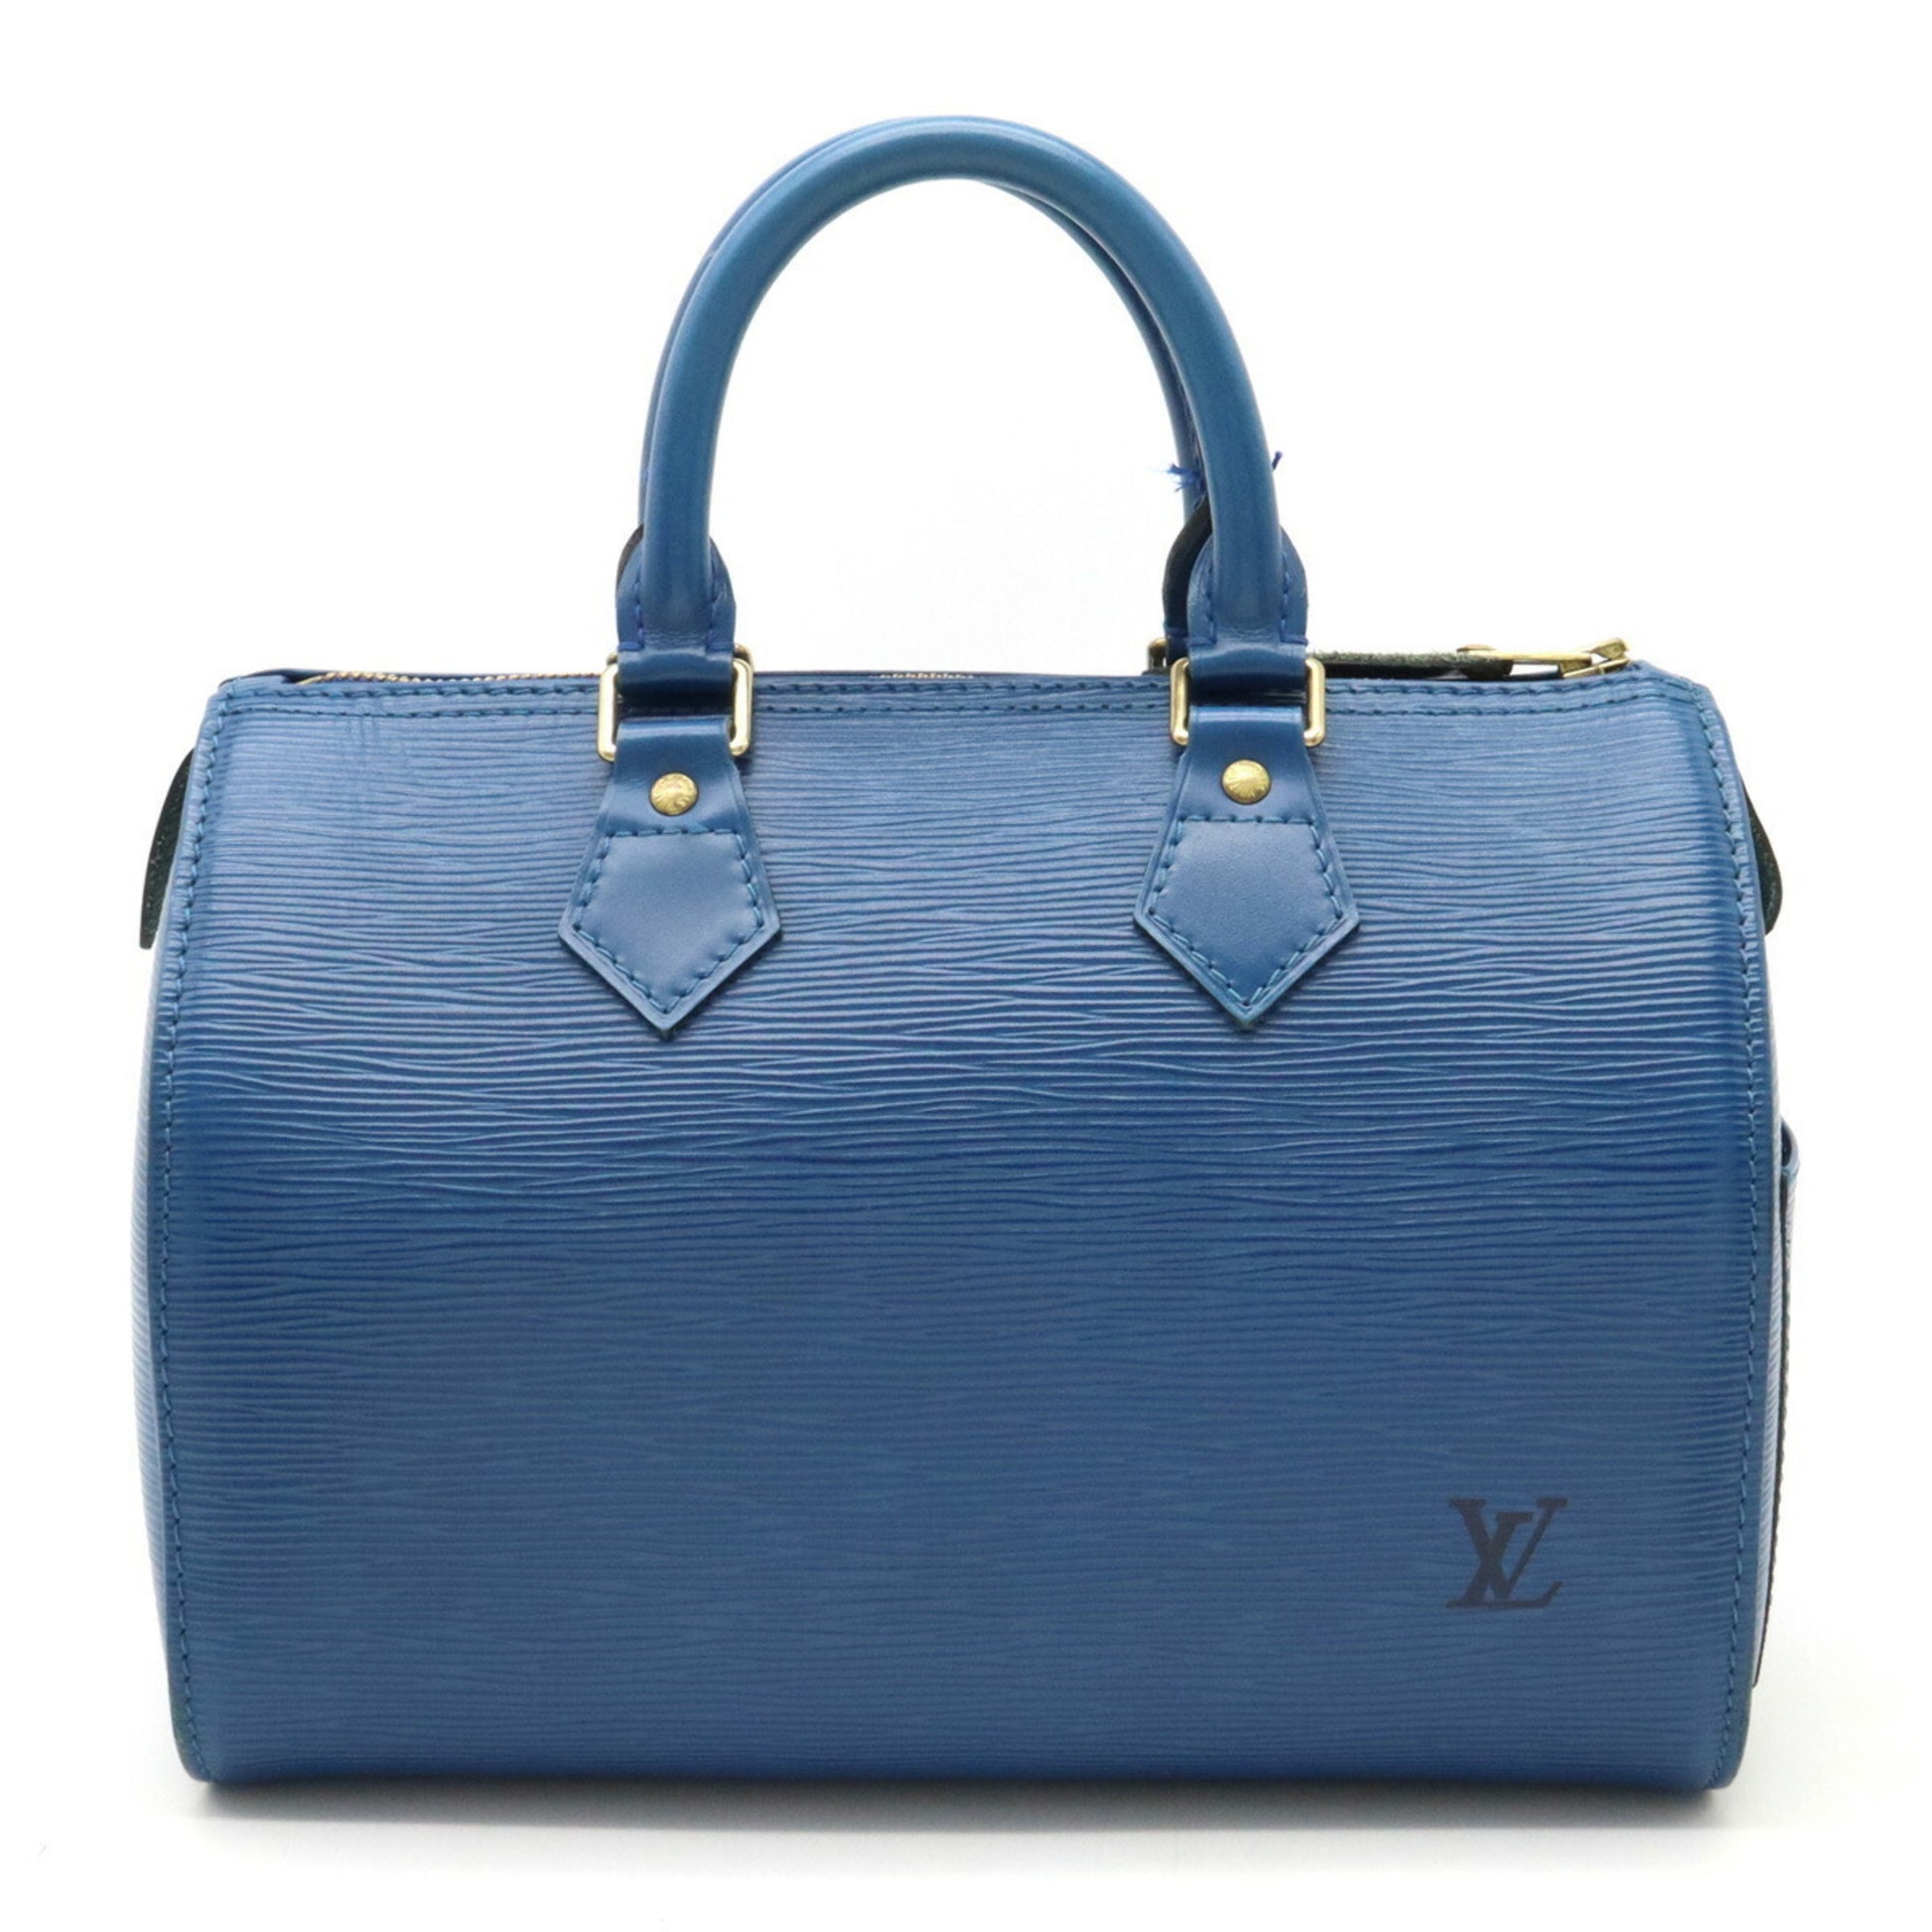 Louis Vuitton Toledo Speedy 25 Boston Bag